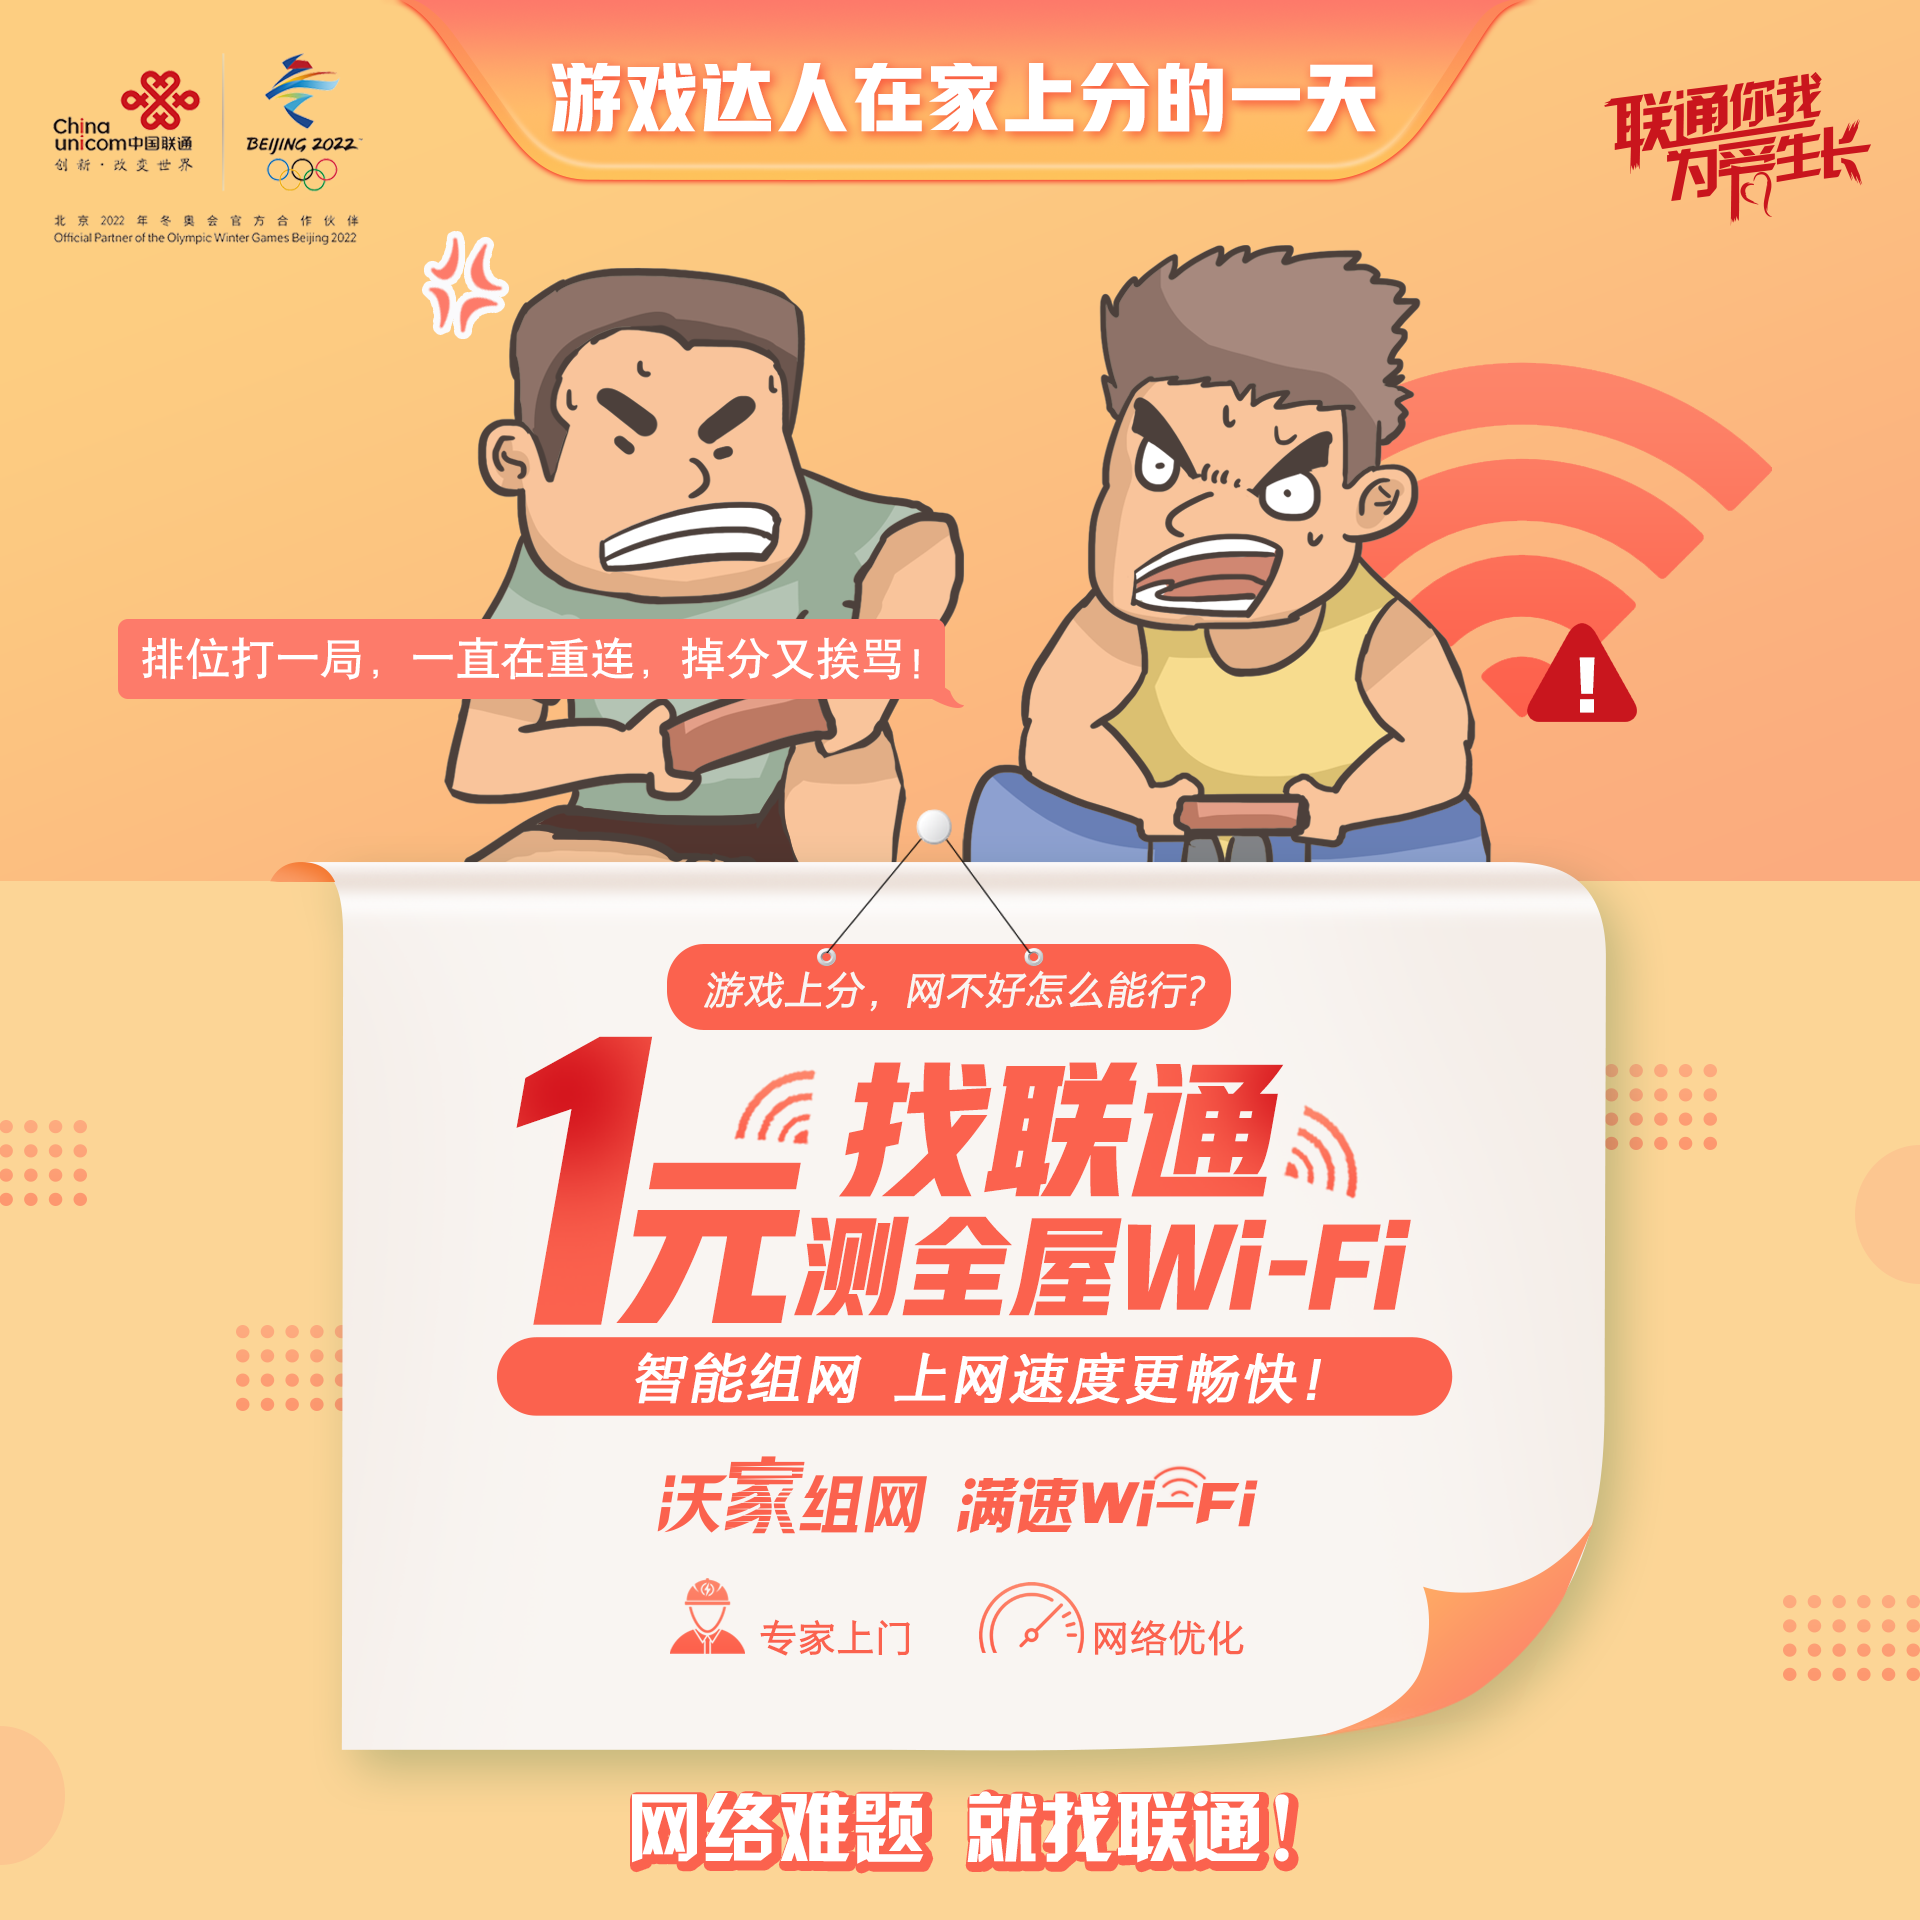 【限时限量】1元抢全屋Wi-Fi上门检测服务